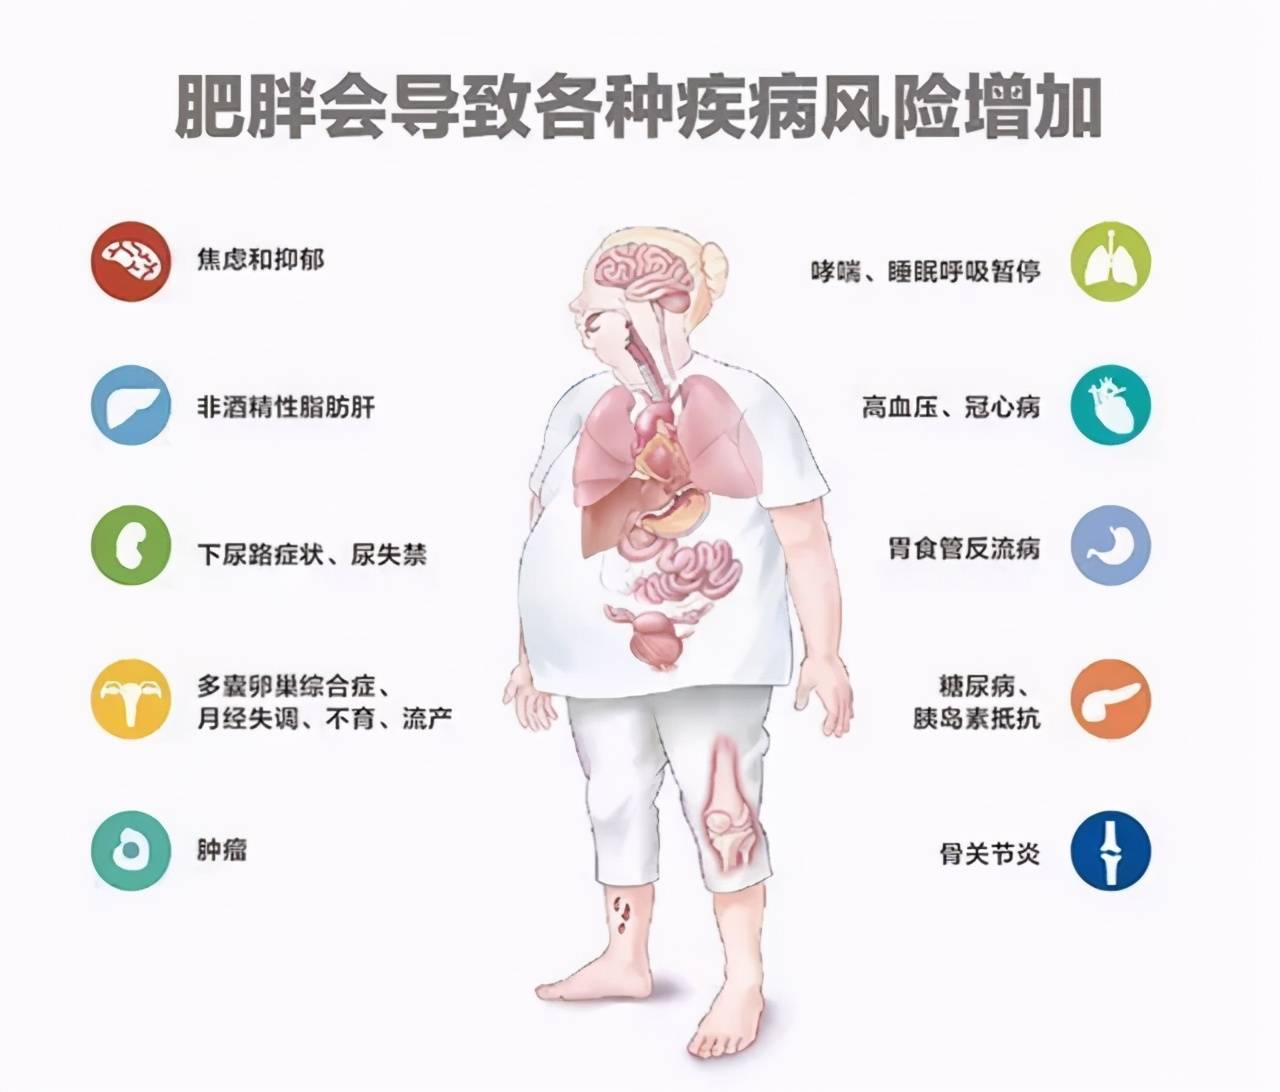 百植资讯6亿中国人超重和肥胖解决肥胖问题迫在眉睫